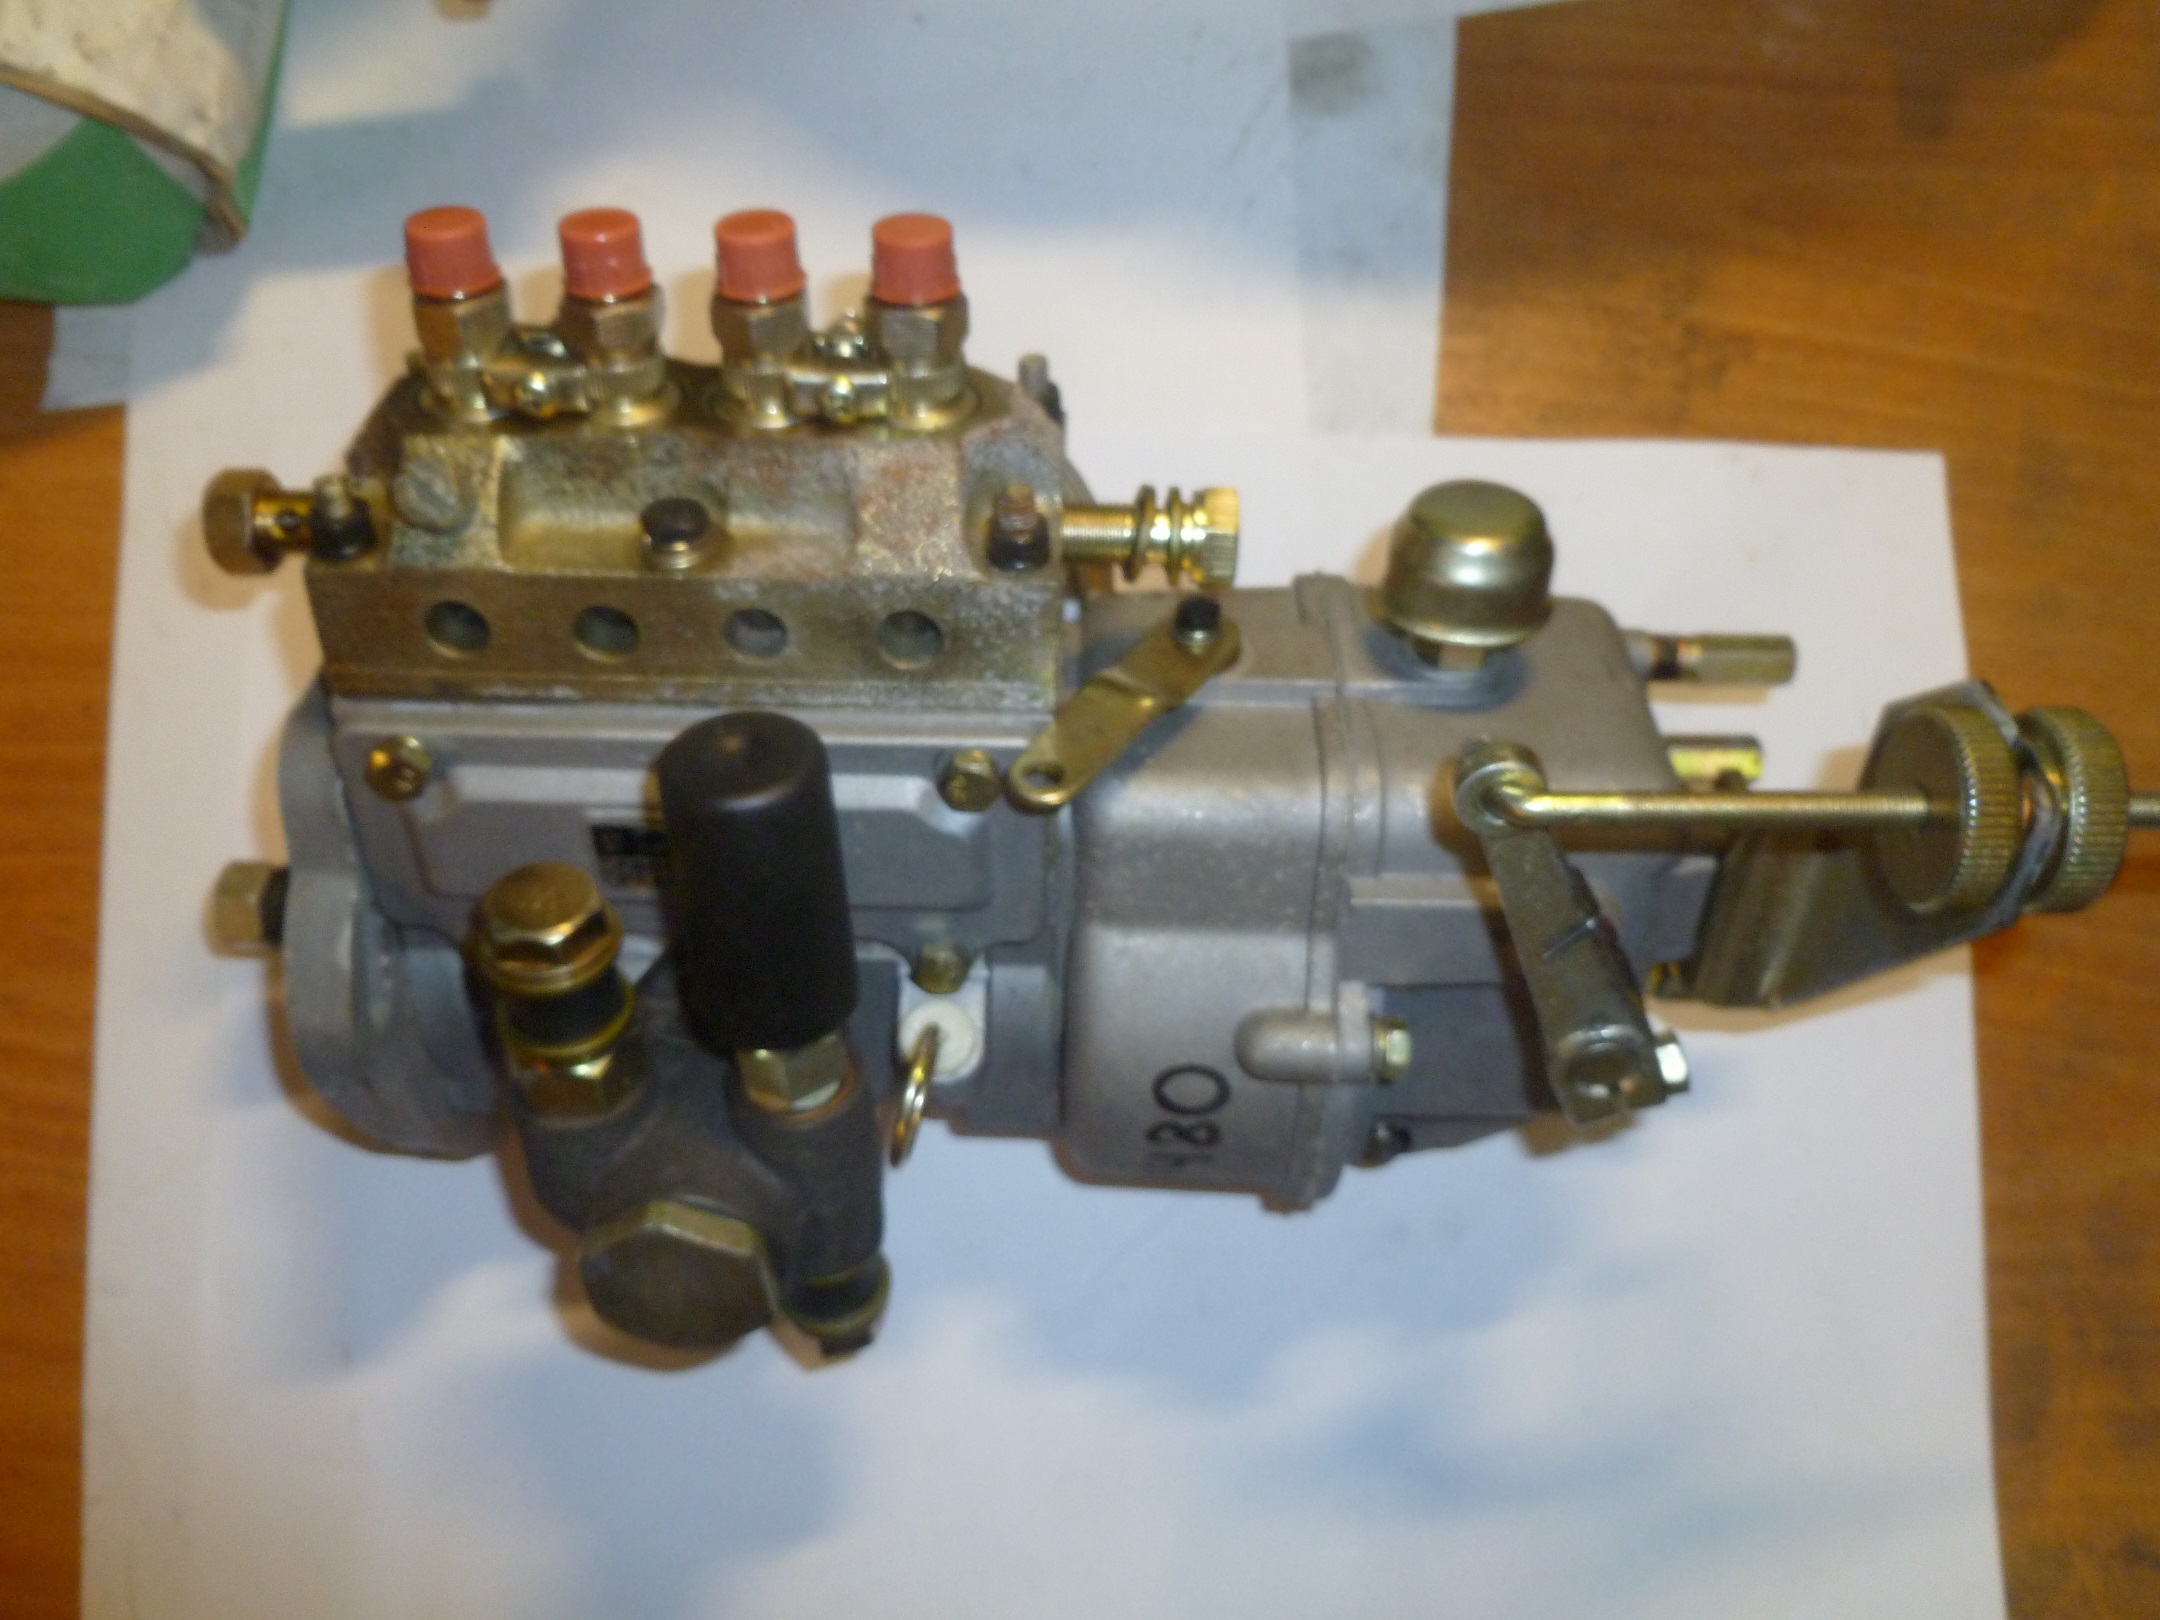 Насос топливный высокого давления Ricardo K4102DS; TDK 48 4LT/Fuel Injection Pump